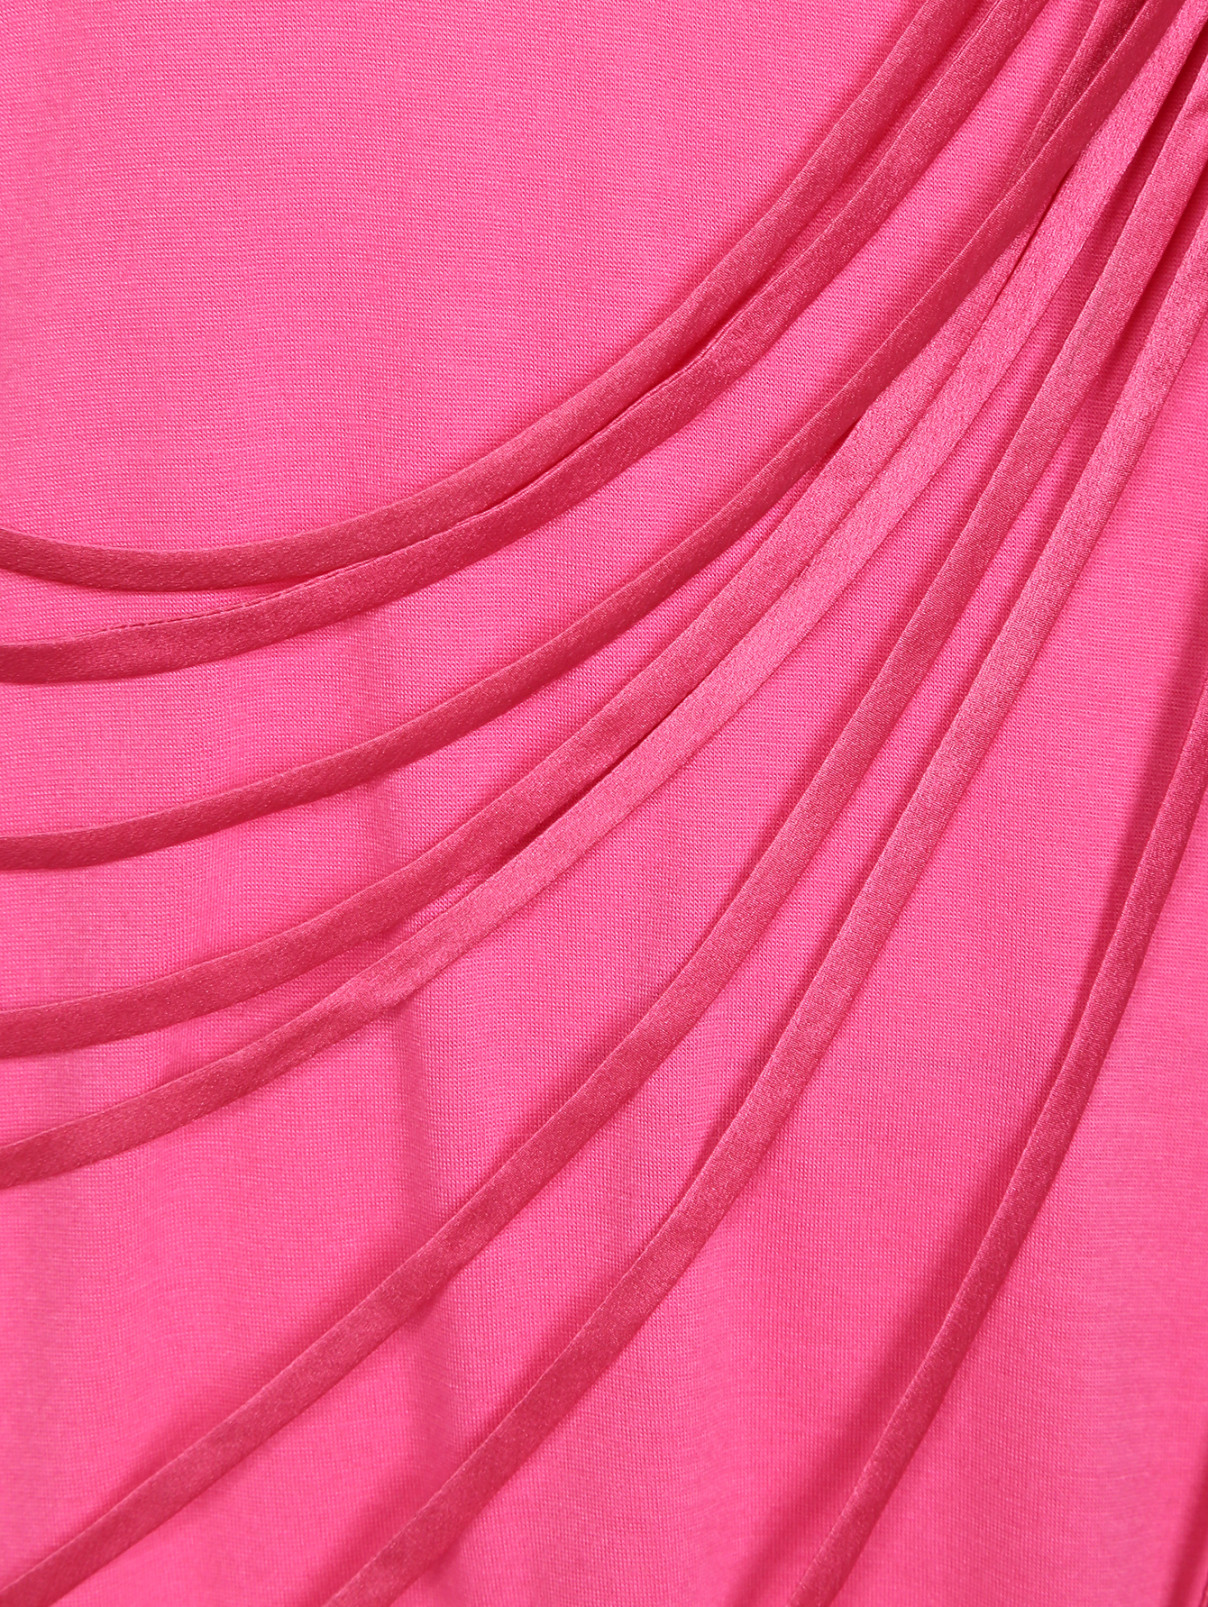 Топ с бантом и драпировкой Maurizio Pecoraro  –  Деталь  – Цвет:  Розовый